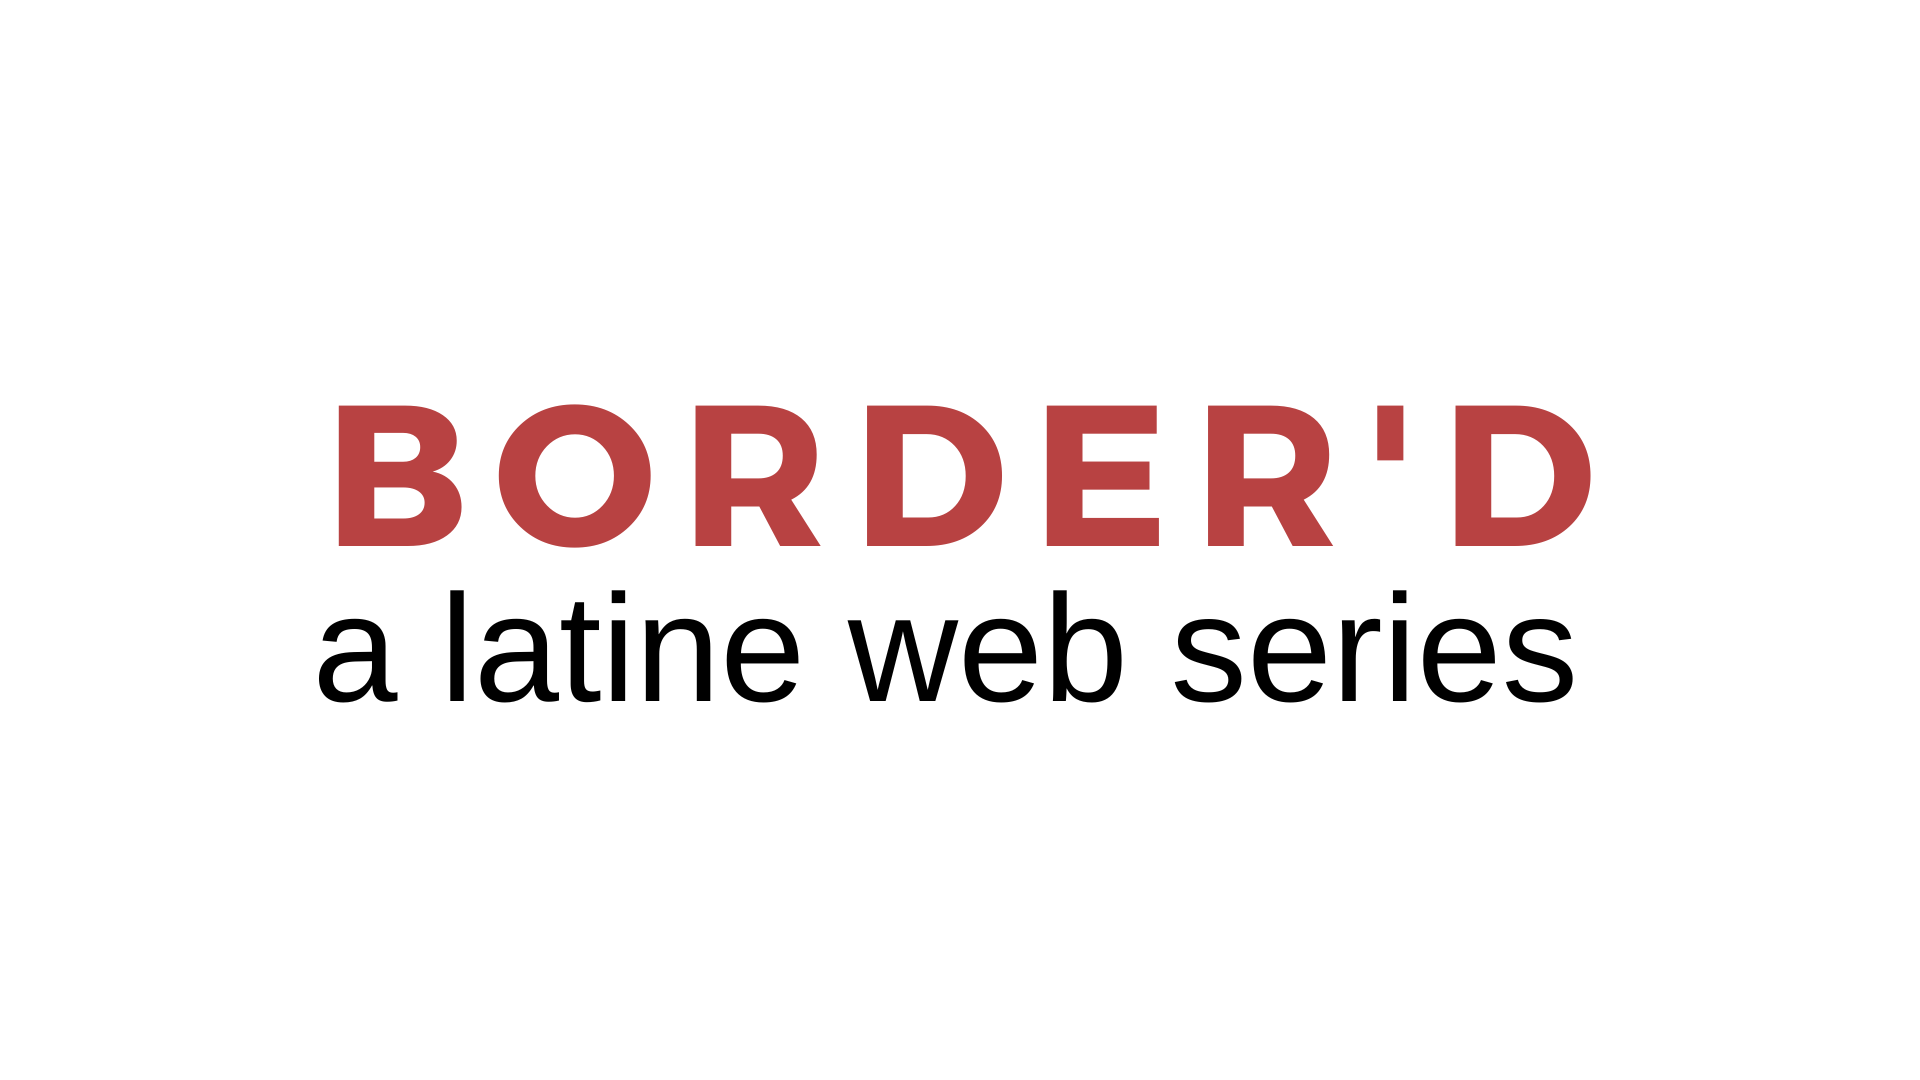 Border'd 